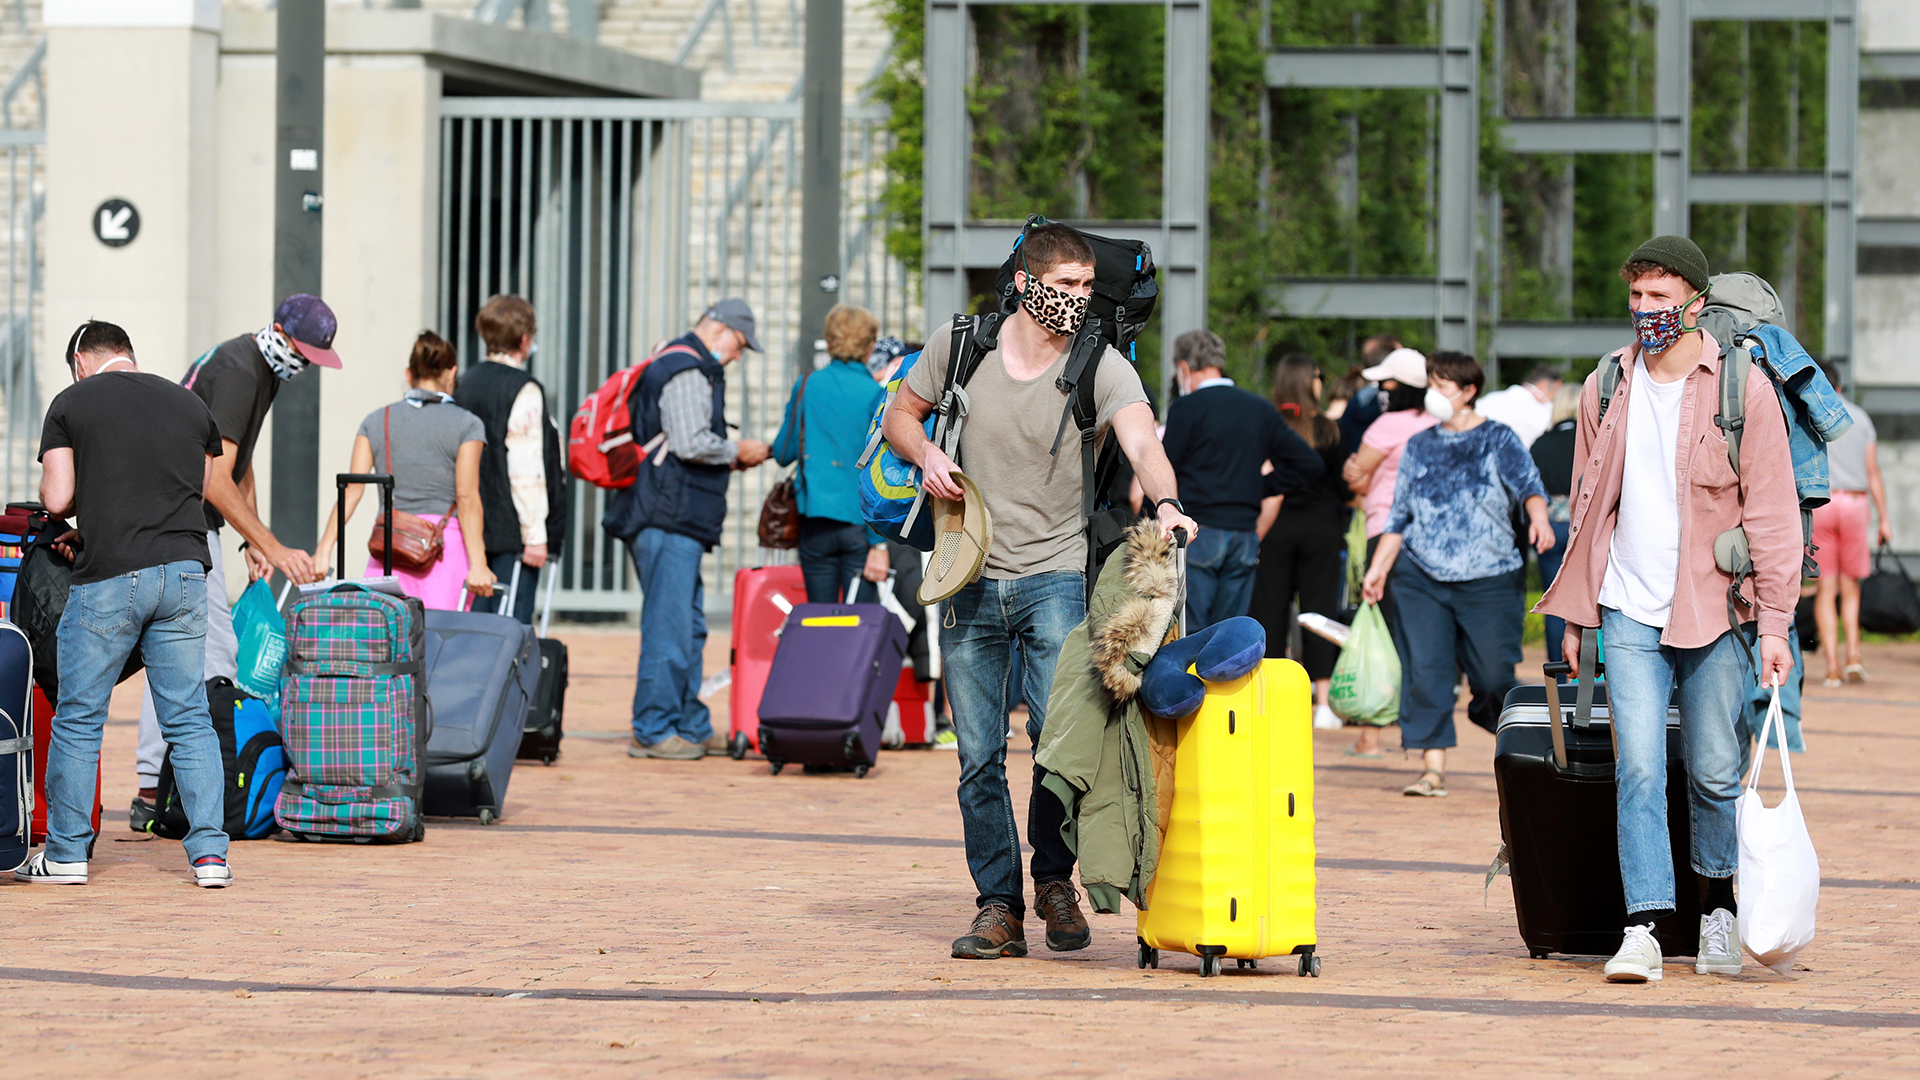 Touristen mit Gepäck am Kapstadt-Stadion, bevor sie mit einem Charterflug von Südafrika nach Deutschland reisen.  | dpa